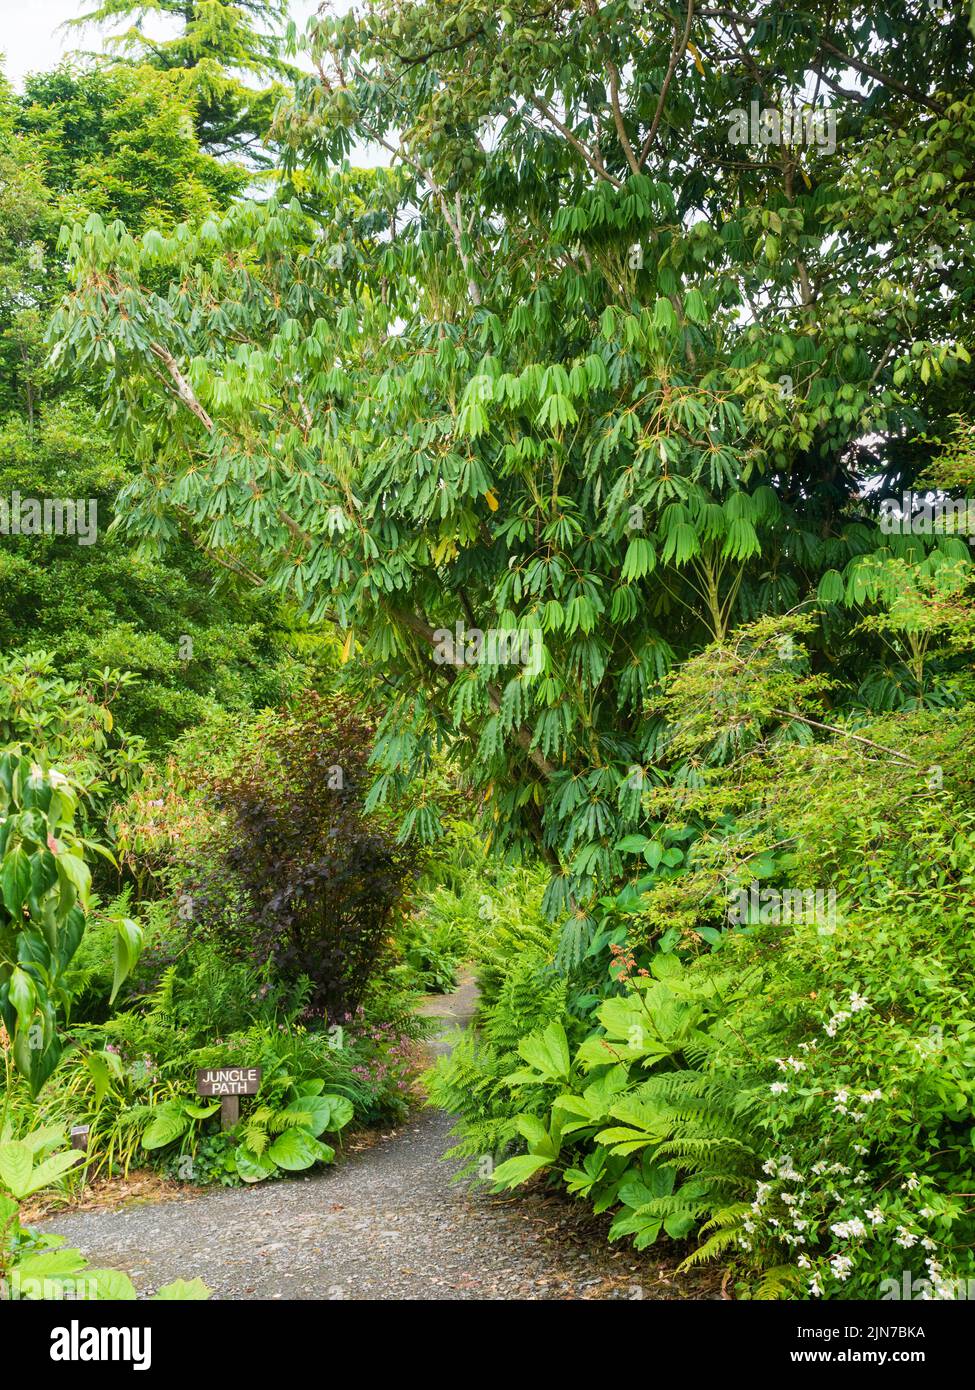 Tropical Looking Palmate fogliame sempreverde della forma Garden House dell'albero ombrello hardy, Schefflera taiwaniana Foto Stock